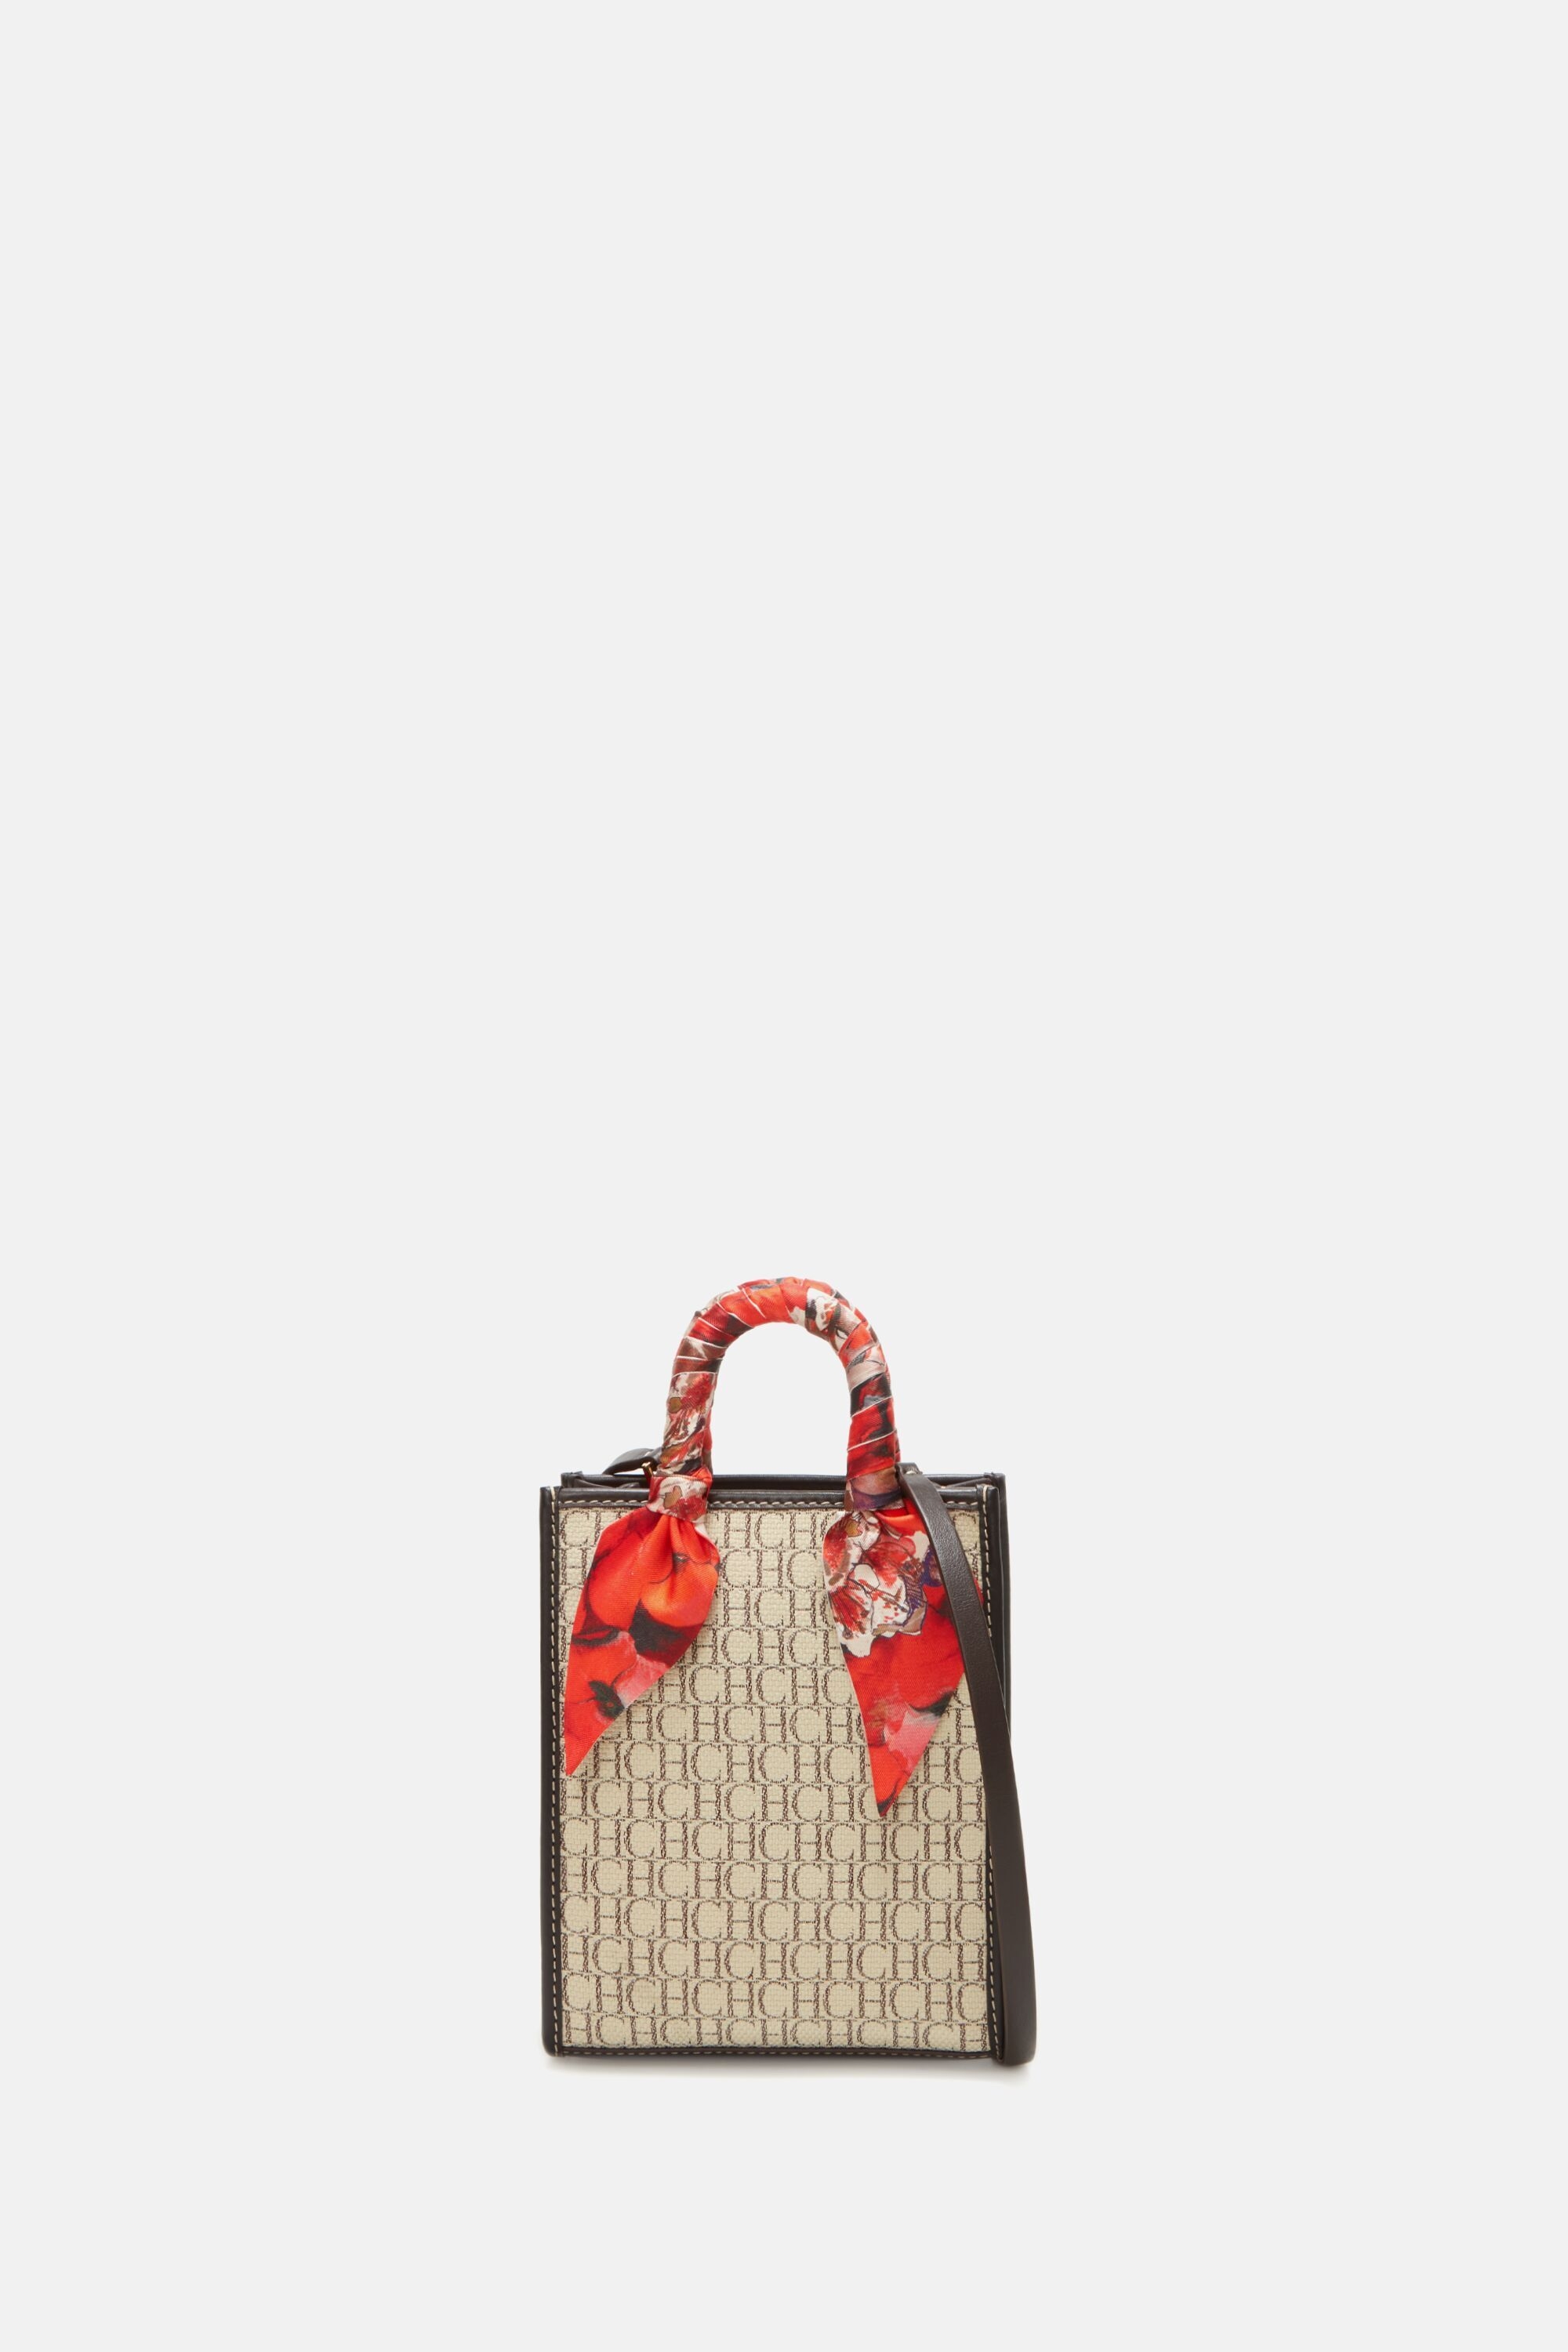 mini shopping bag